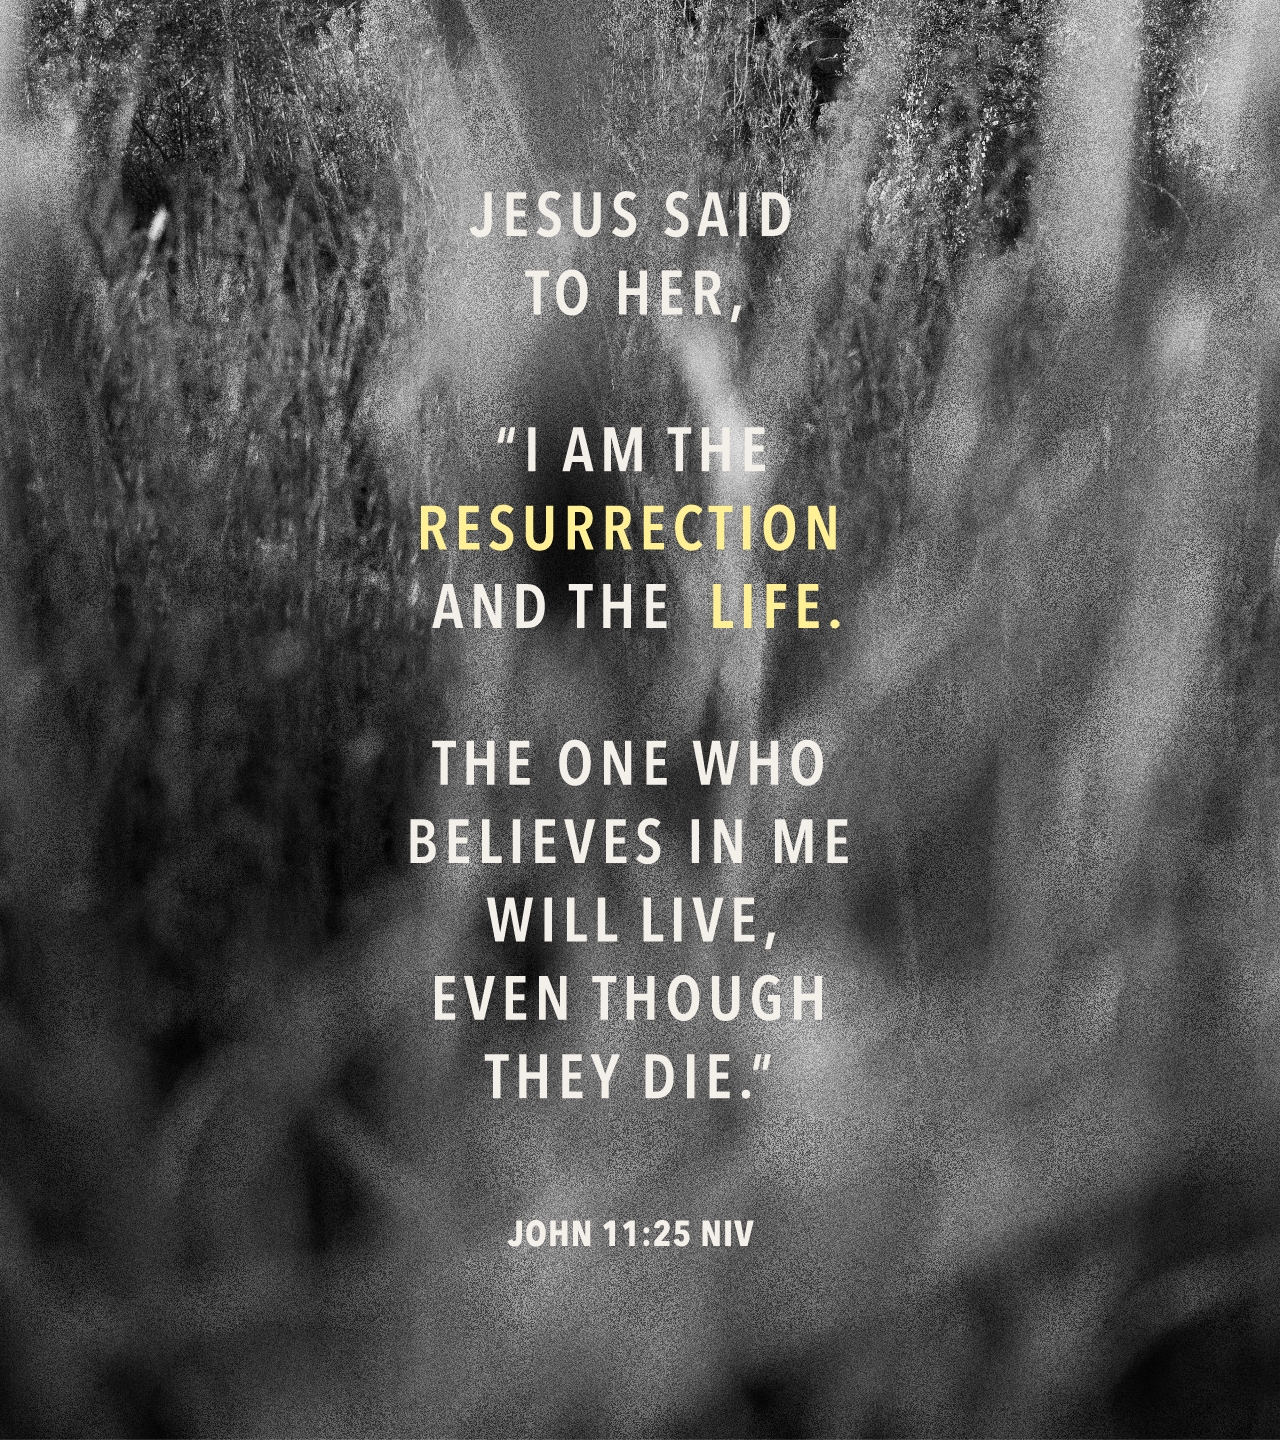 John 11:25 NIV